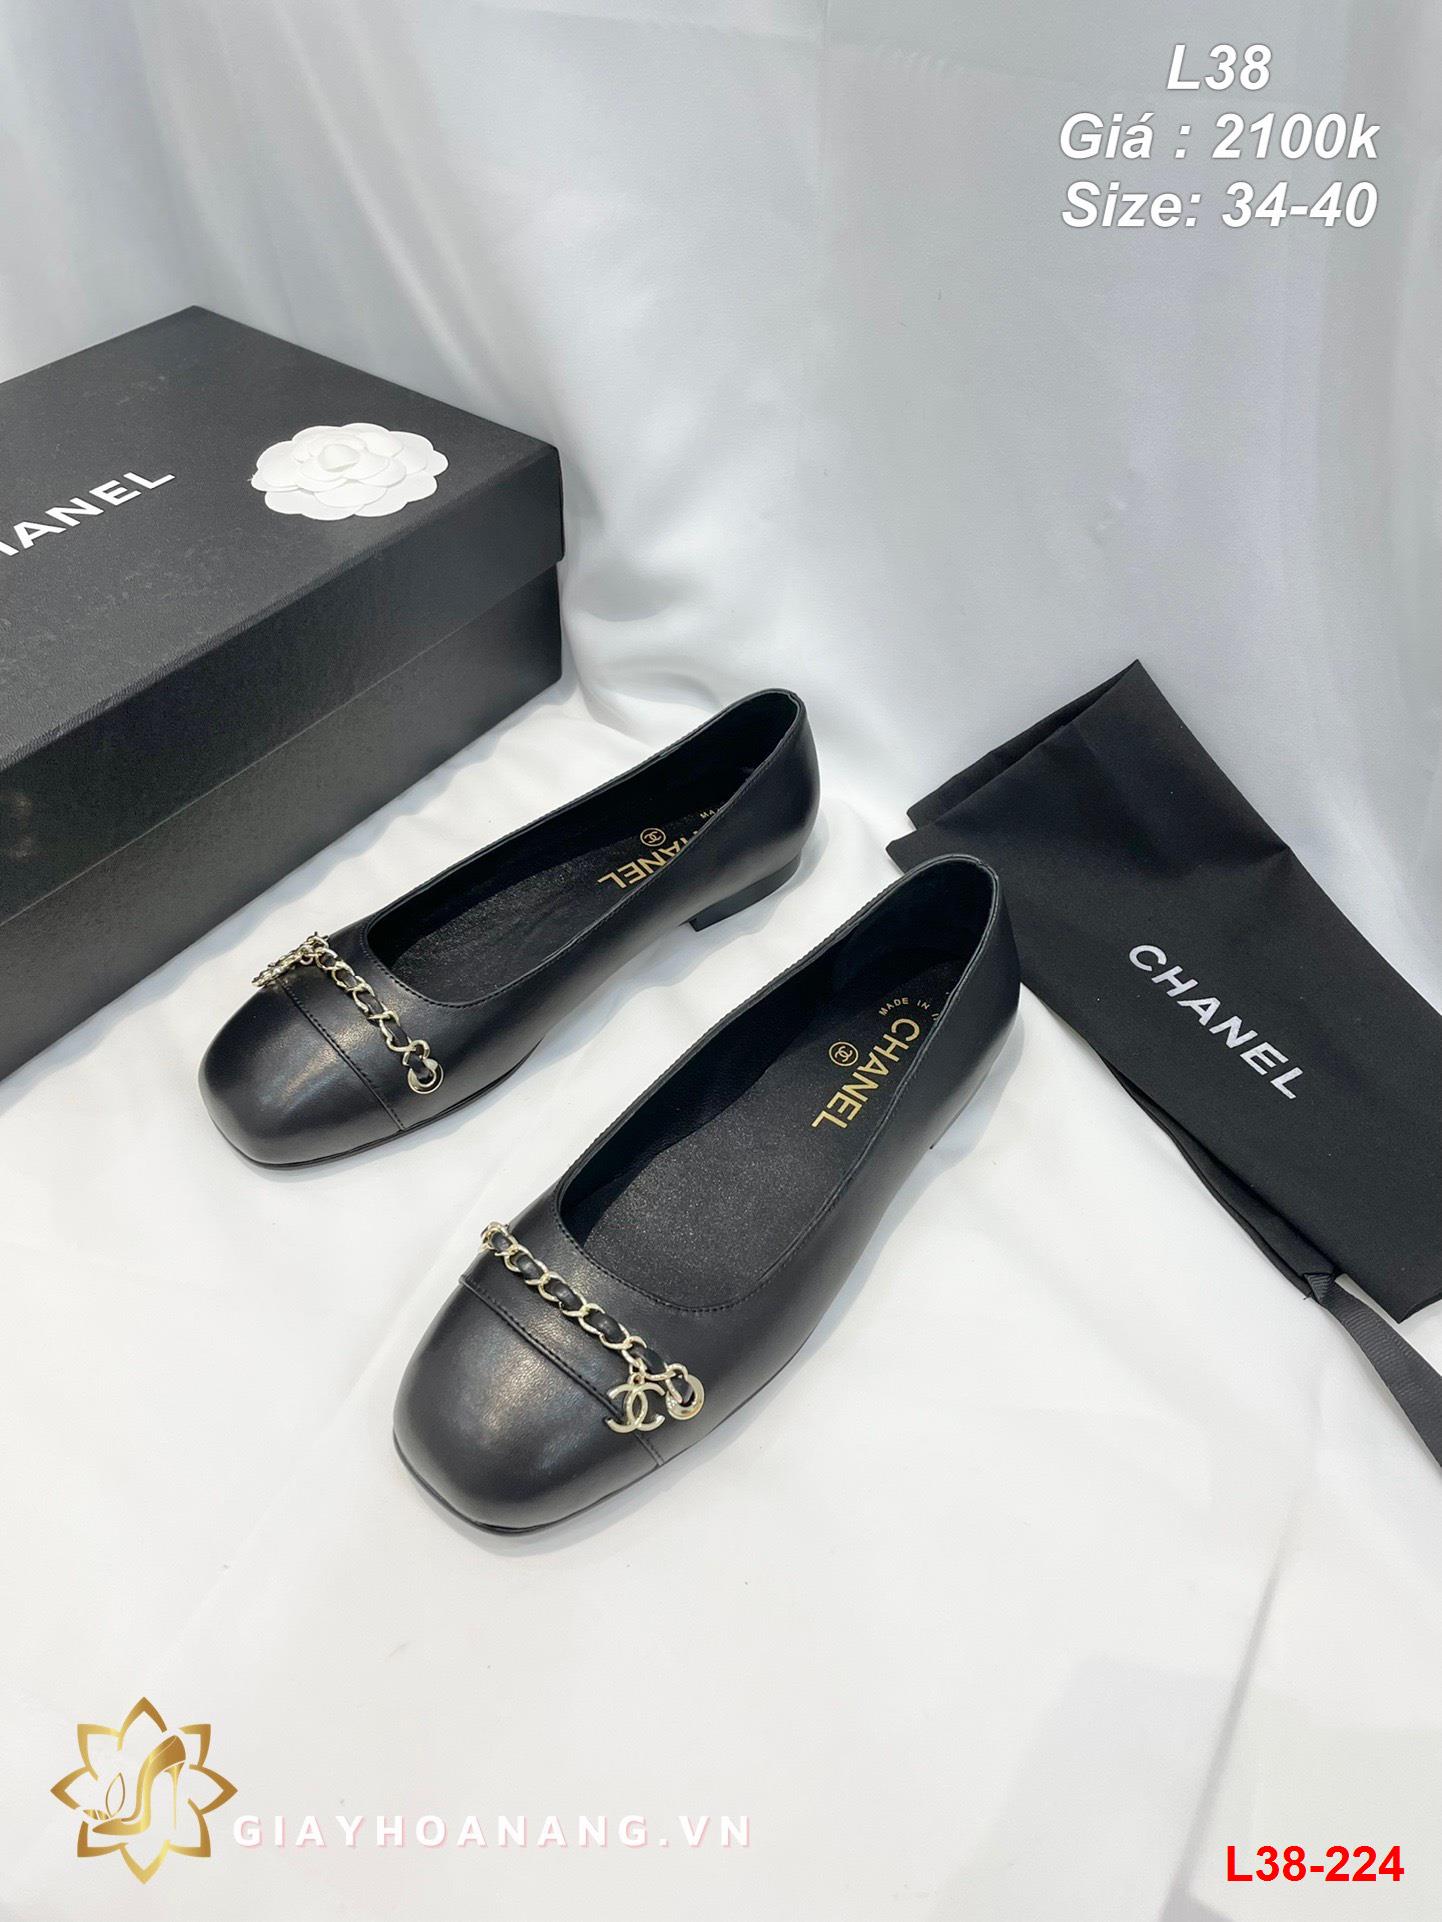 L38-224 Chanel giày bệt siêu cấp